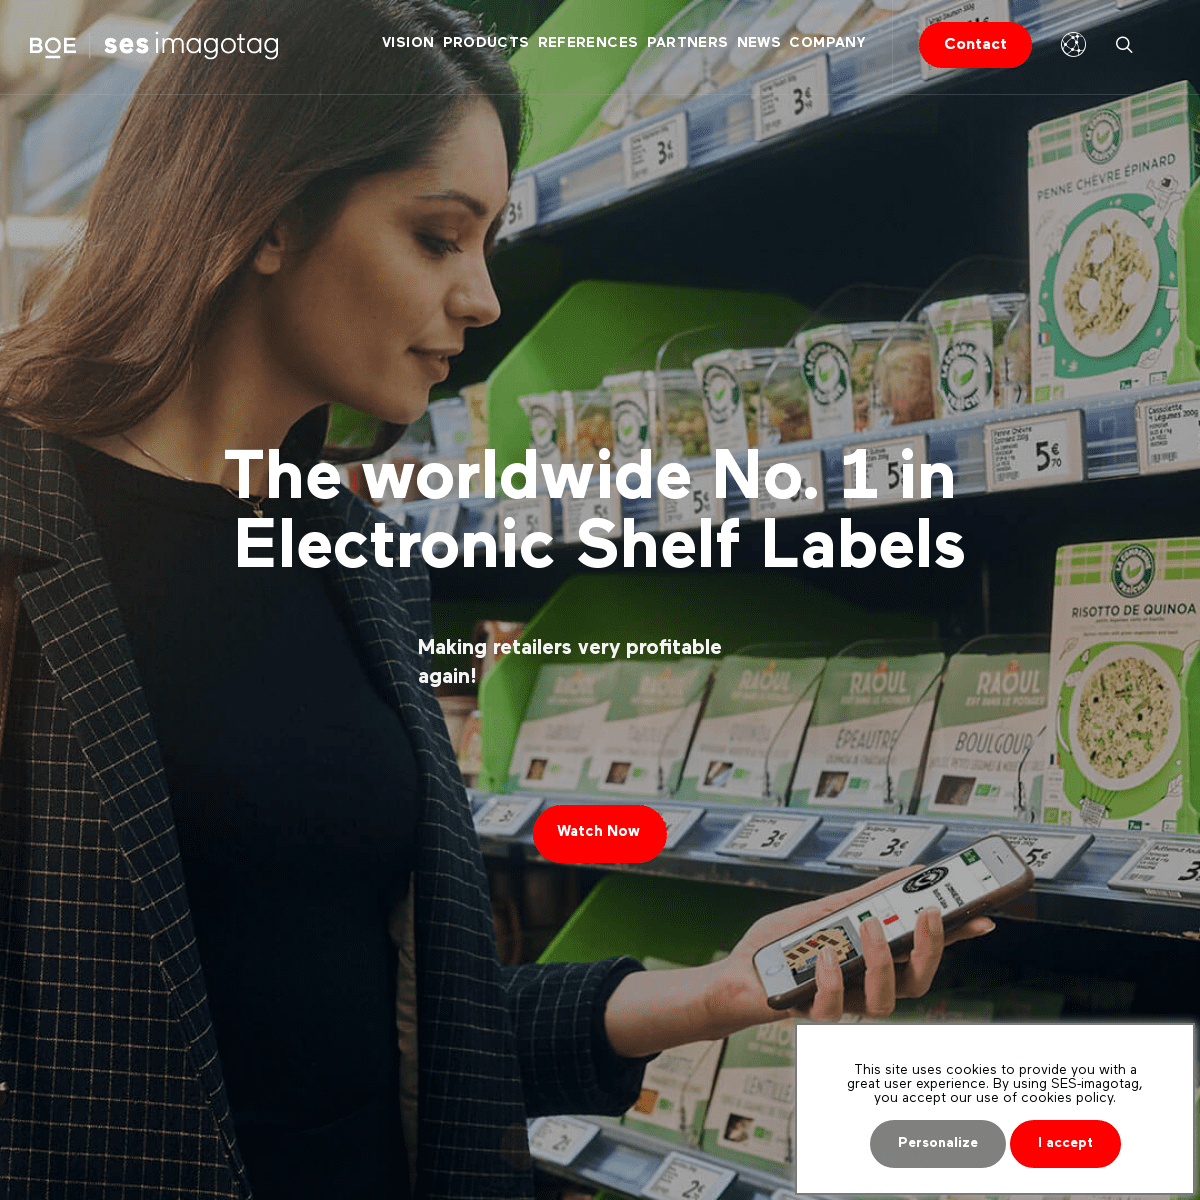 SES-imagotag - Global Leader in Electronic Shelf Labels - Global Leader in Smart Electronic Shelf Labels